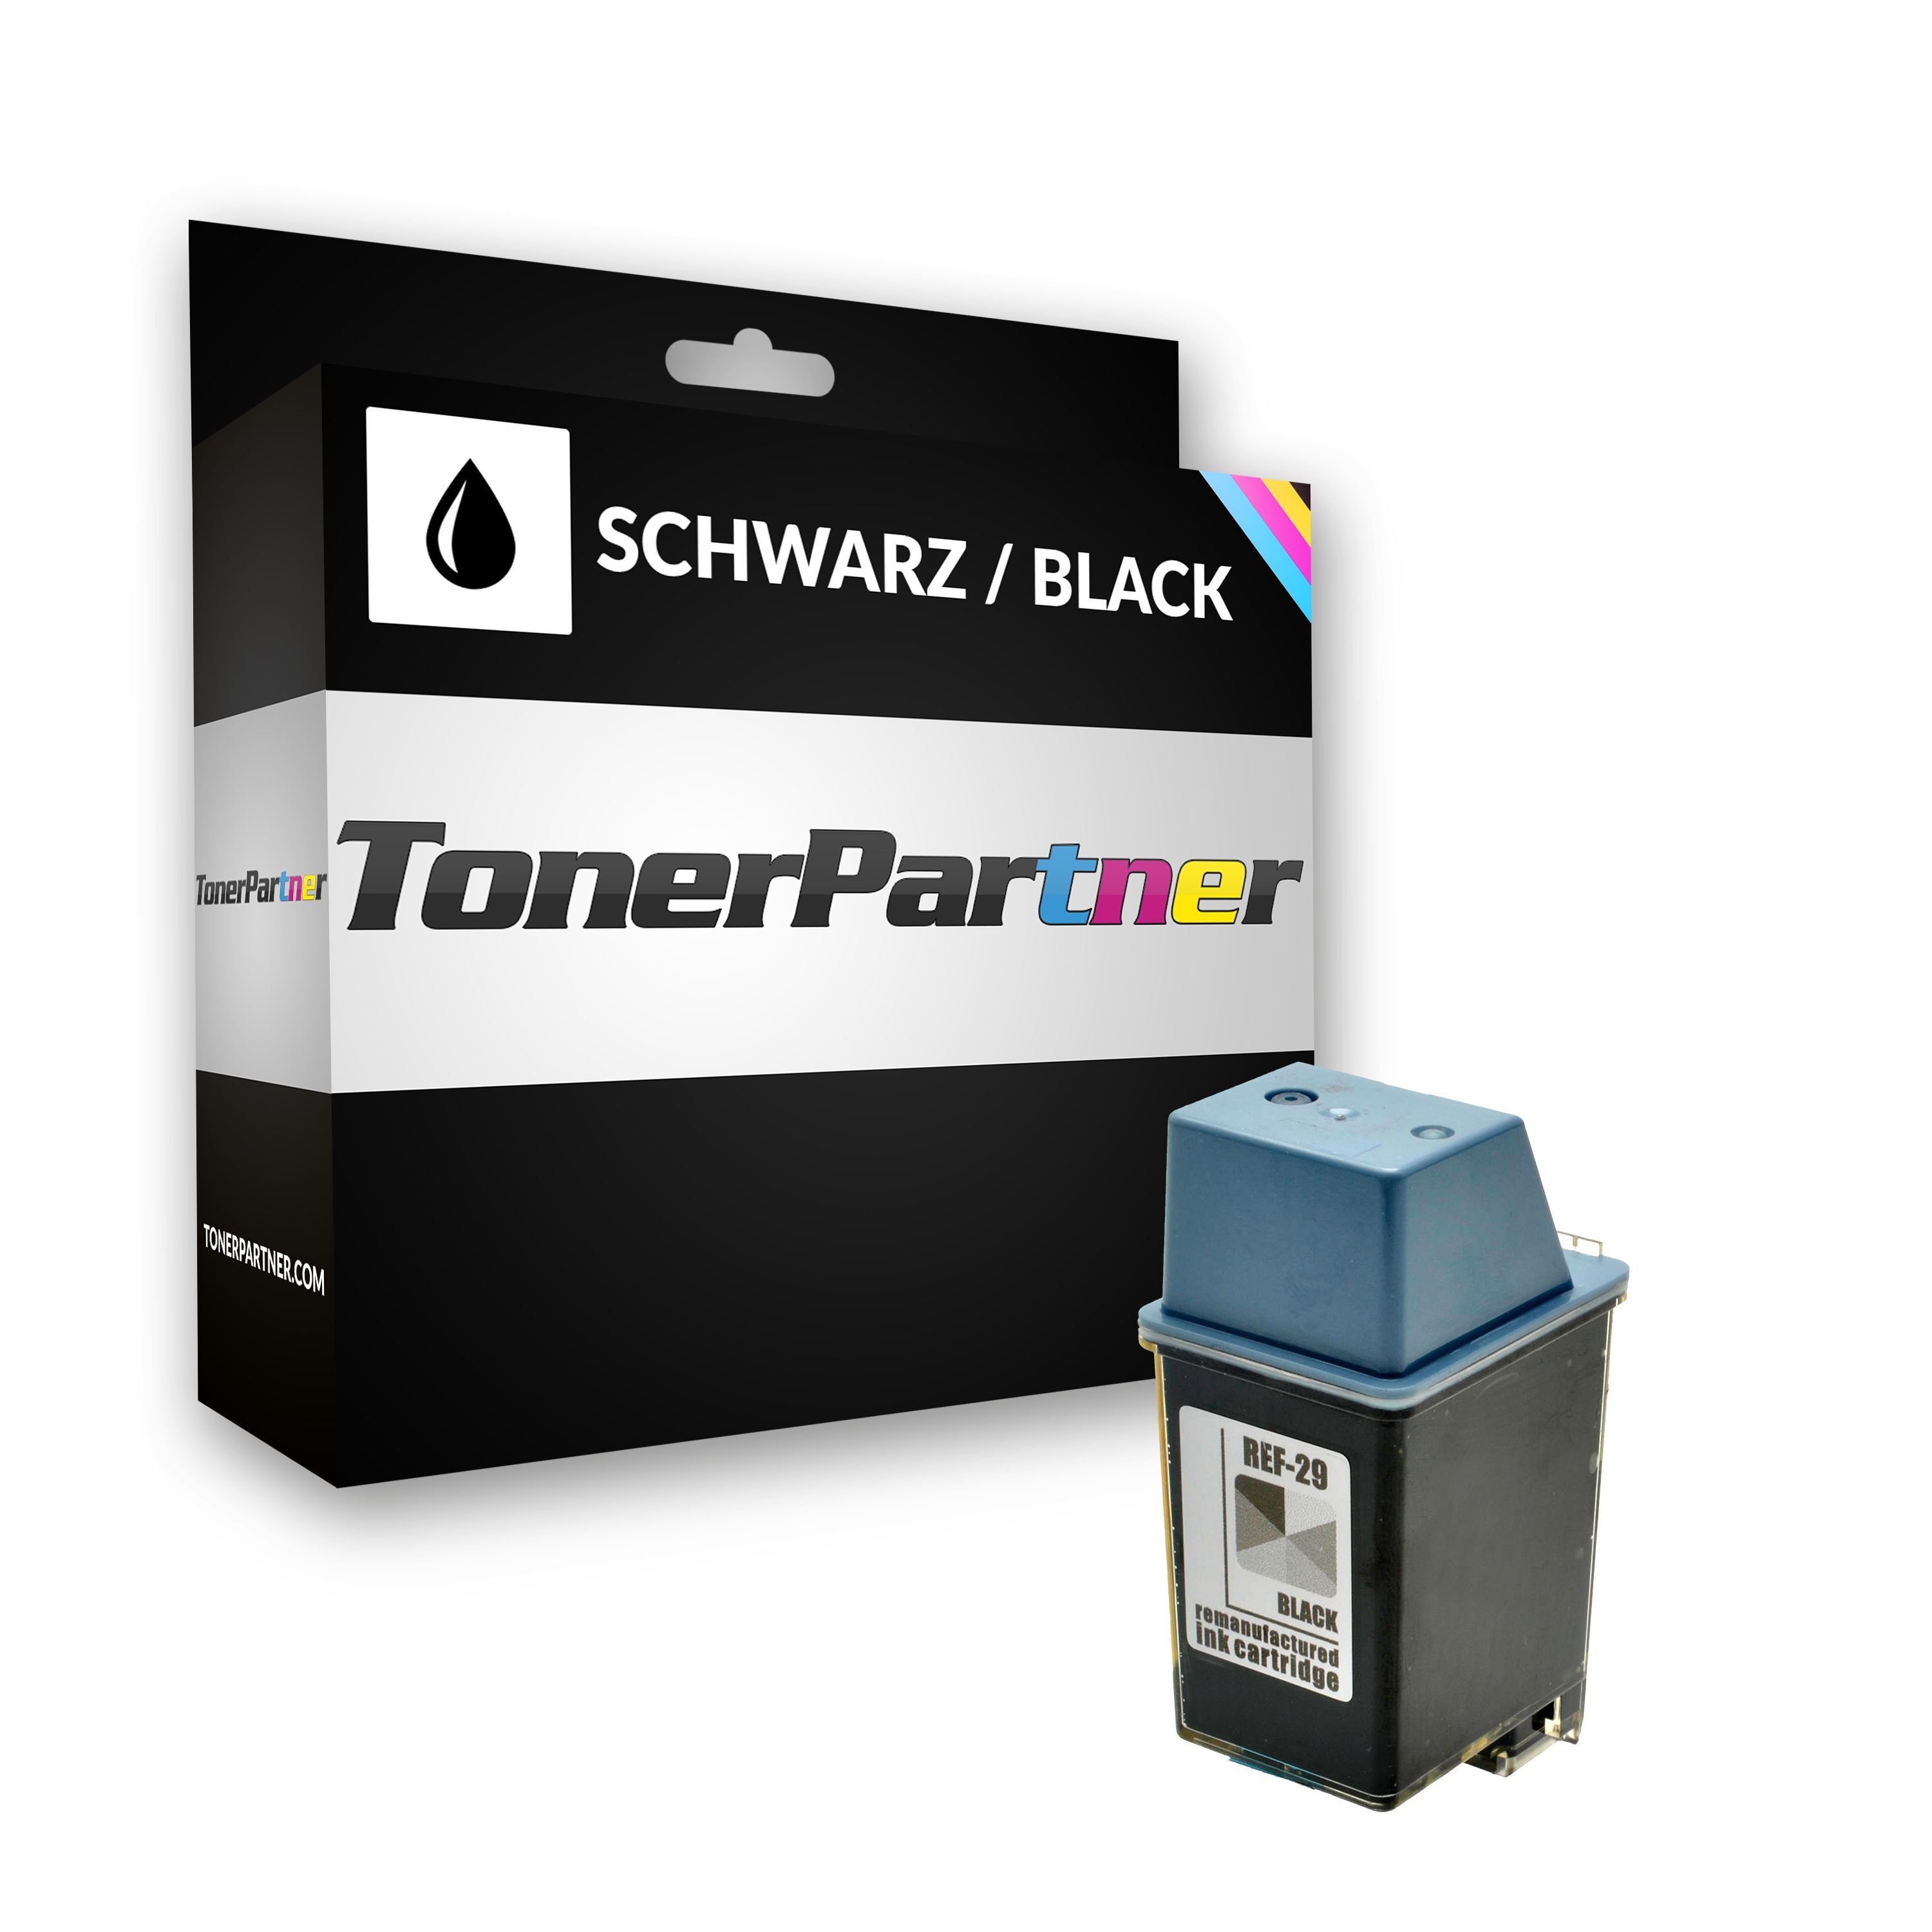 TonerPartner Kompatibel zu HP OfficeJet 710 Tintenpatrone (29 / 51629 AE) schwarz, 650 Seiten, 3,03 Rp pro Seite, Inhalt: 40 ml von TonerPartner